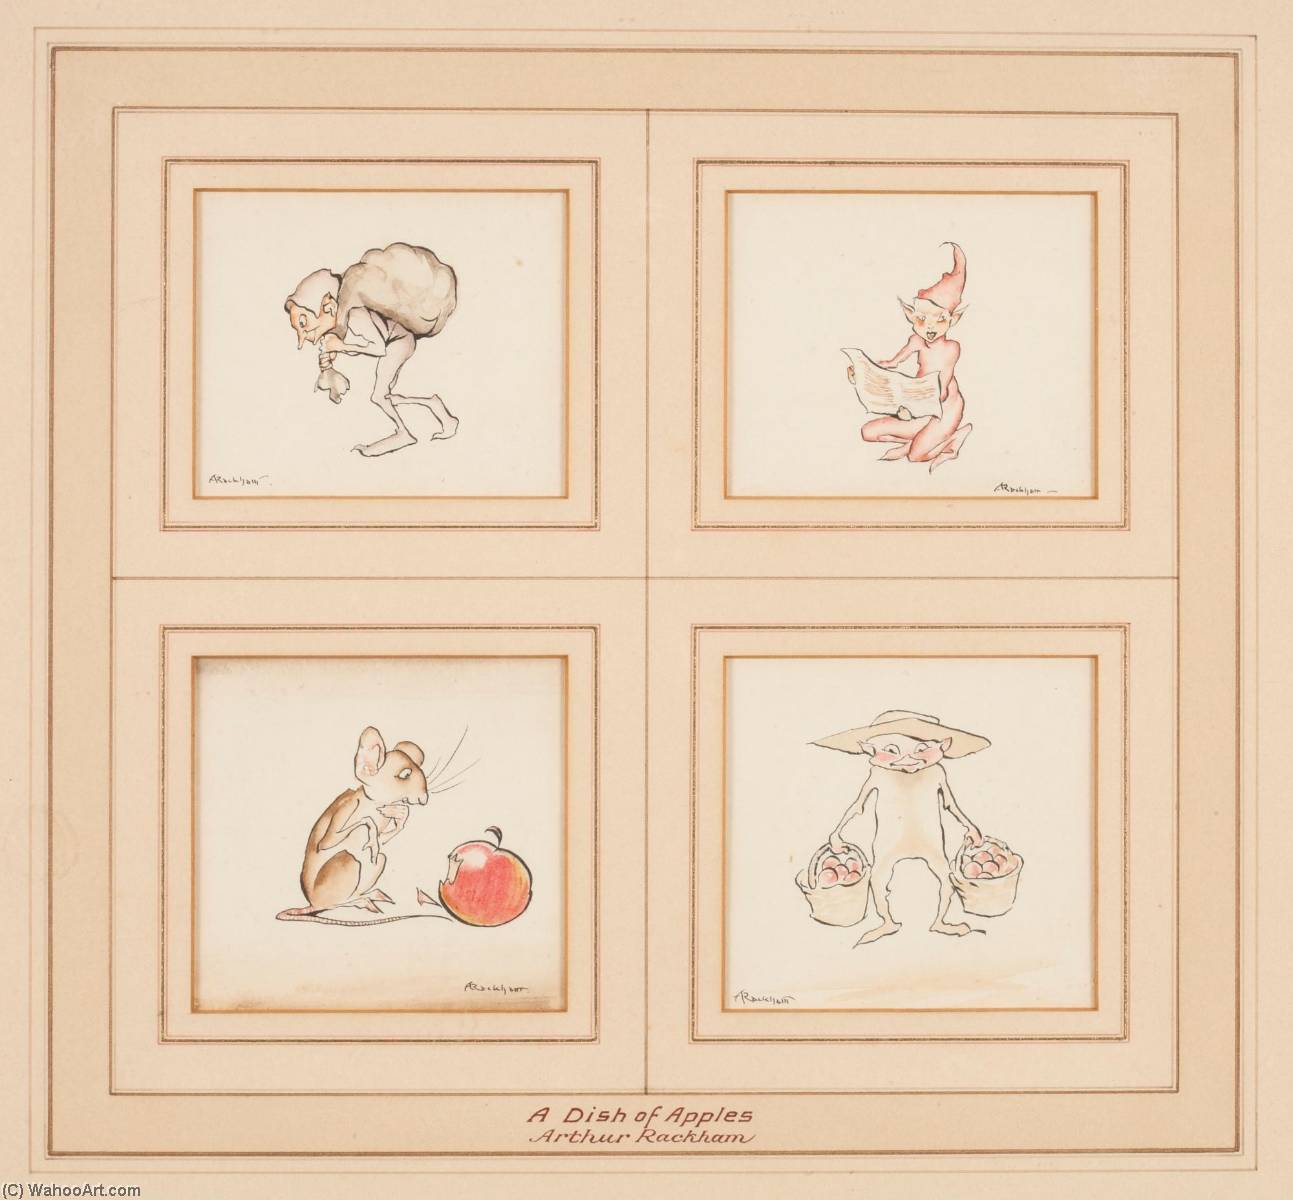 WikiOO.org - אנציקלופדיה לאמנויות יפות - ציור, יצירות אמנות Arthur Rackham - Original illustrations for A Dish of Apples